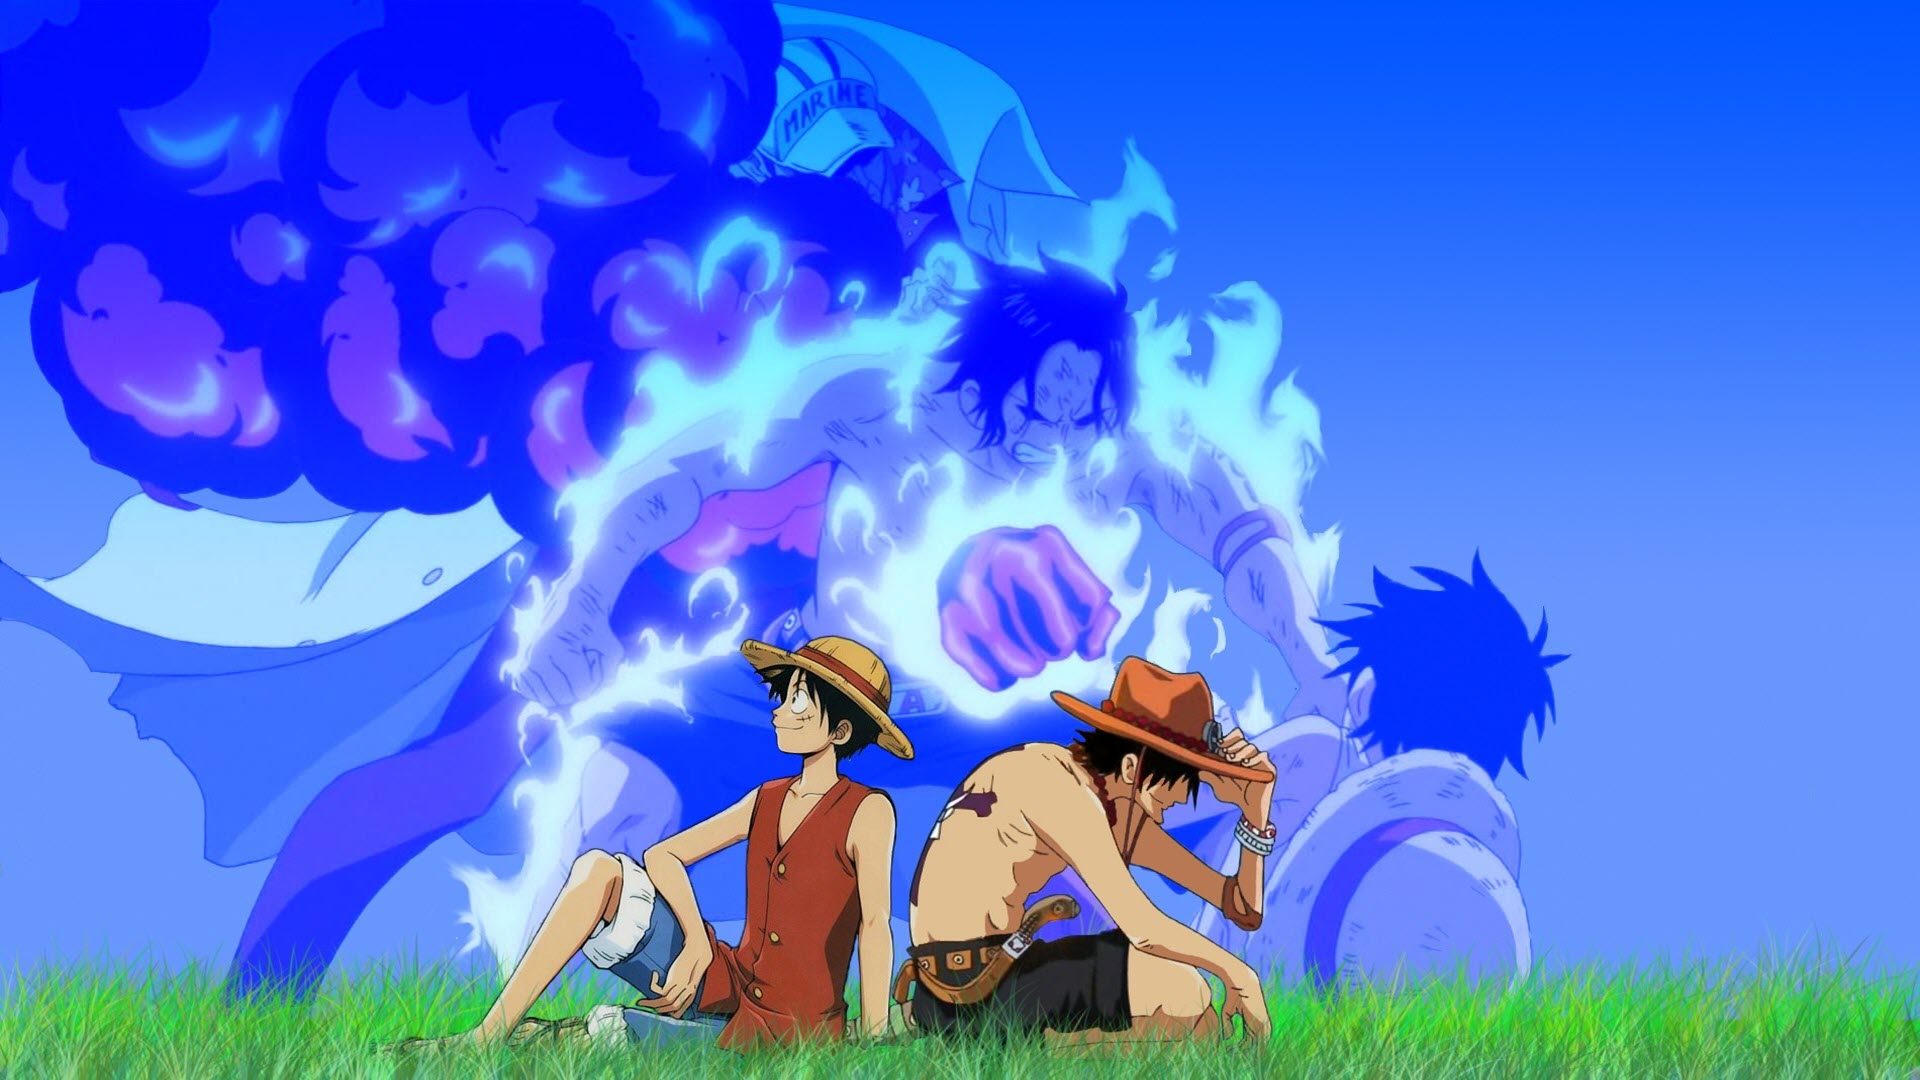 Hình nền Ace One Piece Full HD tuyệt đẹp cho máy tính